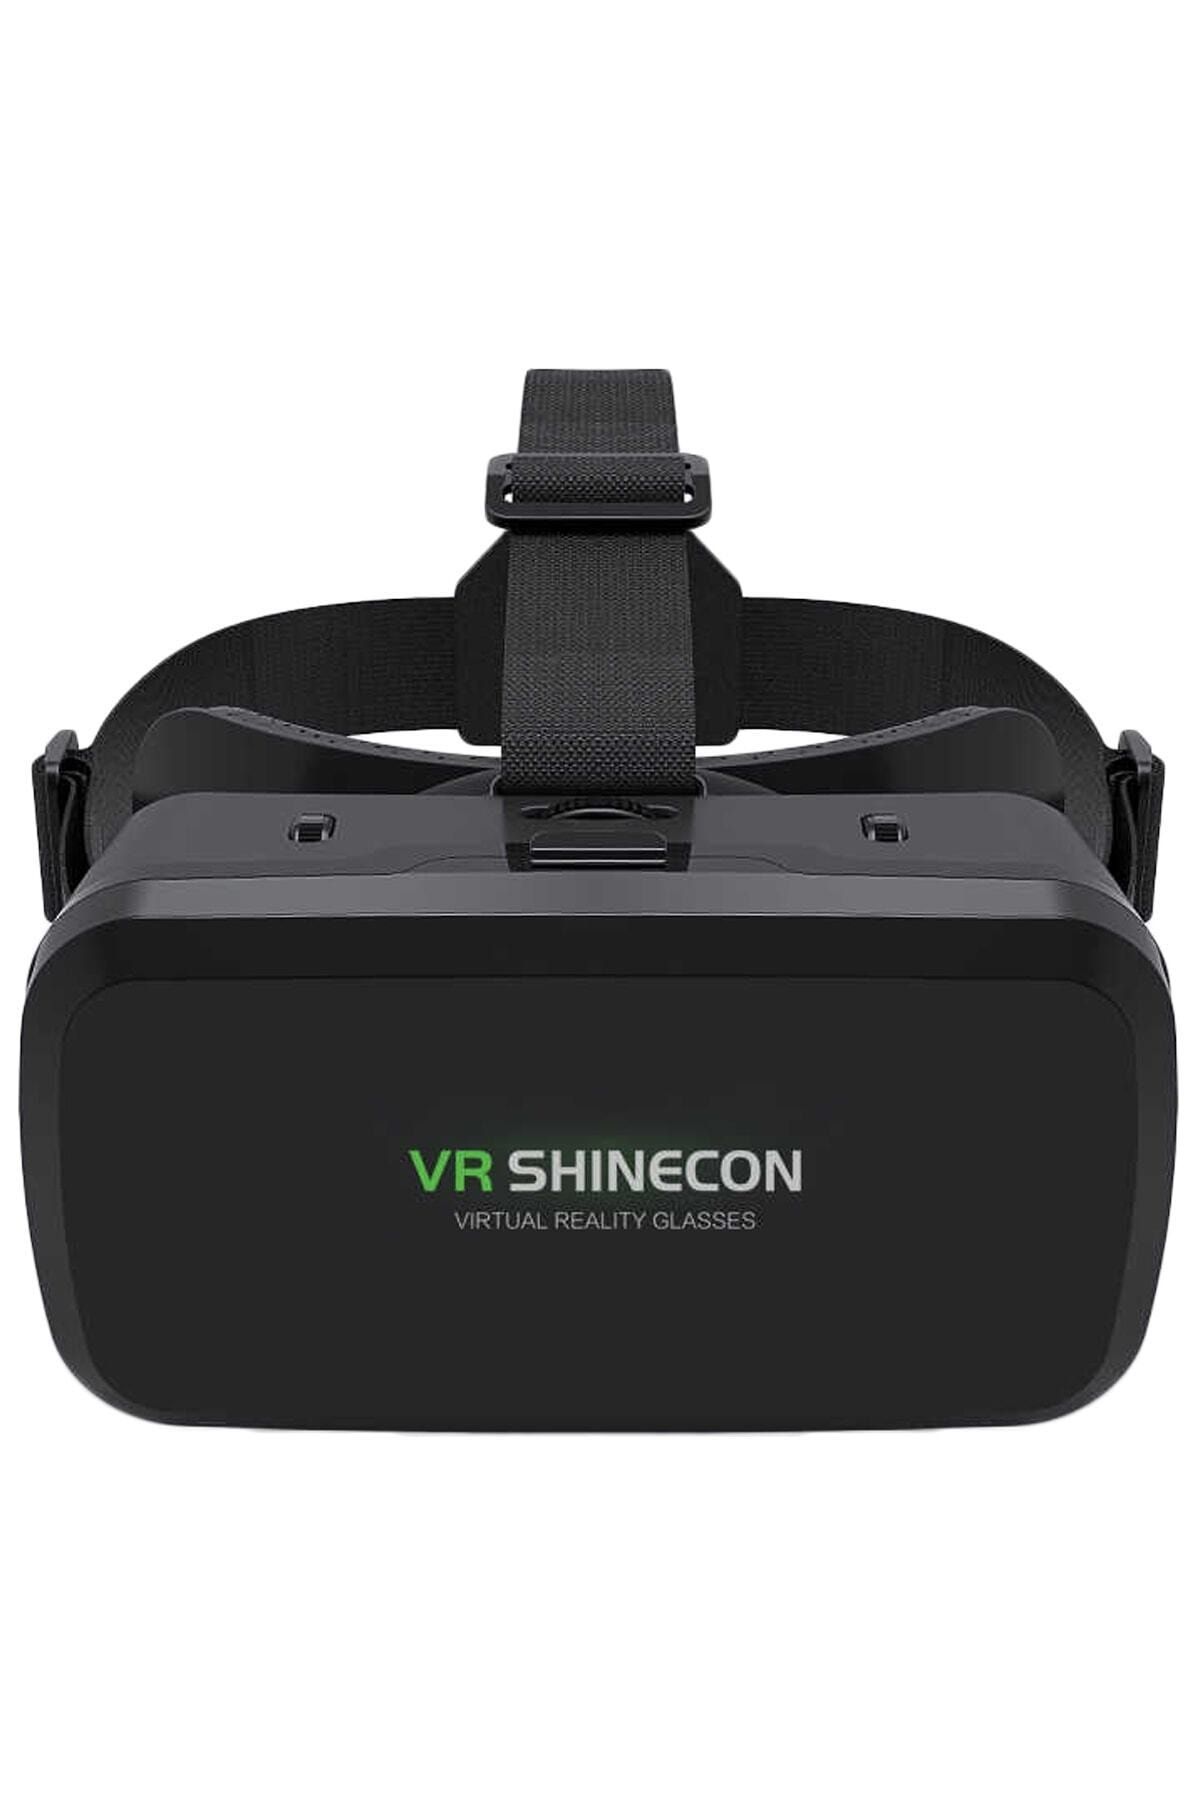 VR Shinecon Orjinal Shinecon 3d Sanal Gerçeklik Gözlüğü 3.5-6.0 Inç